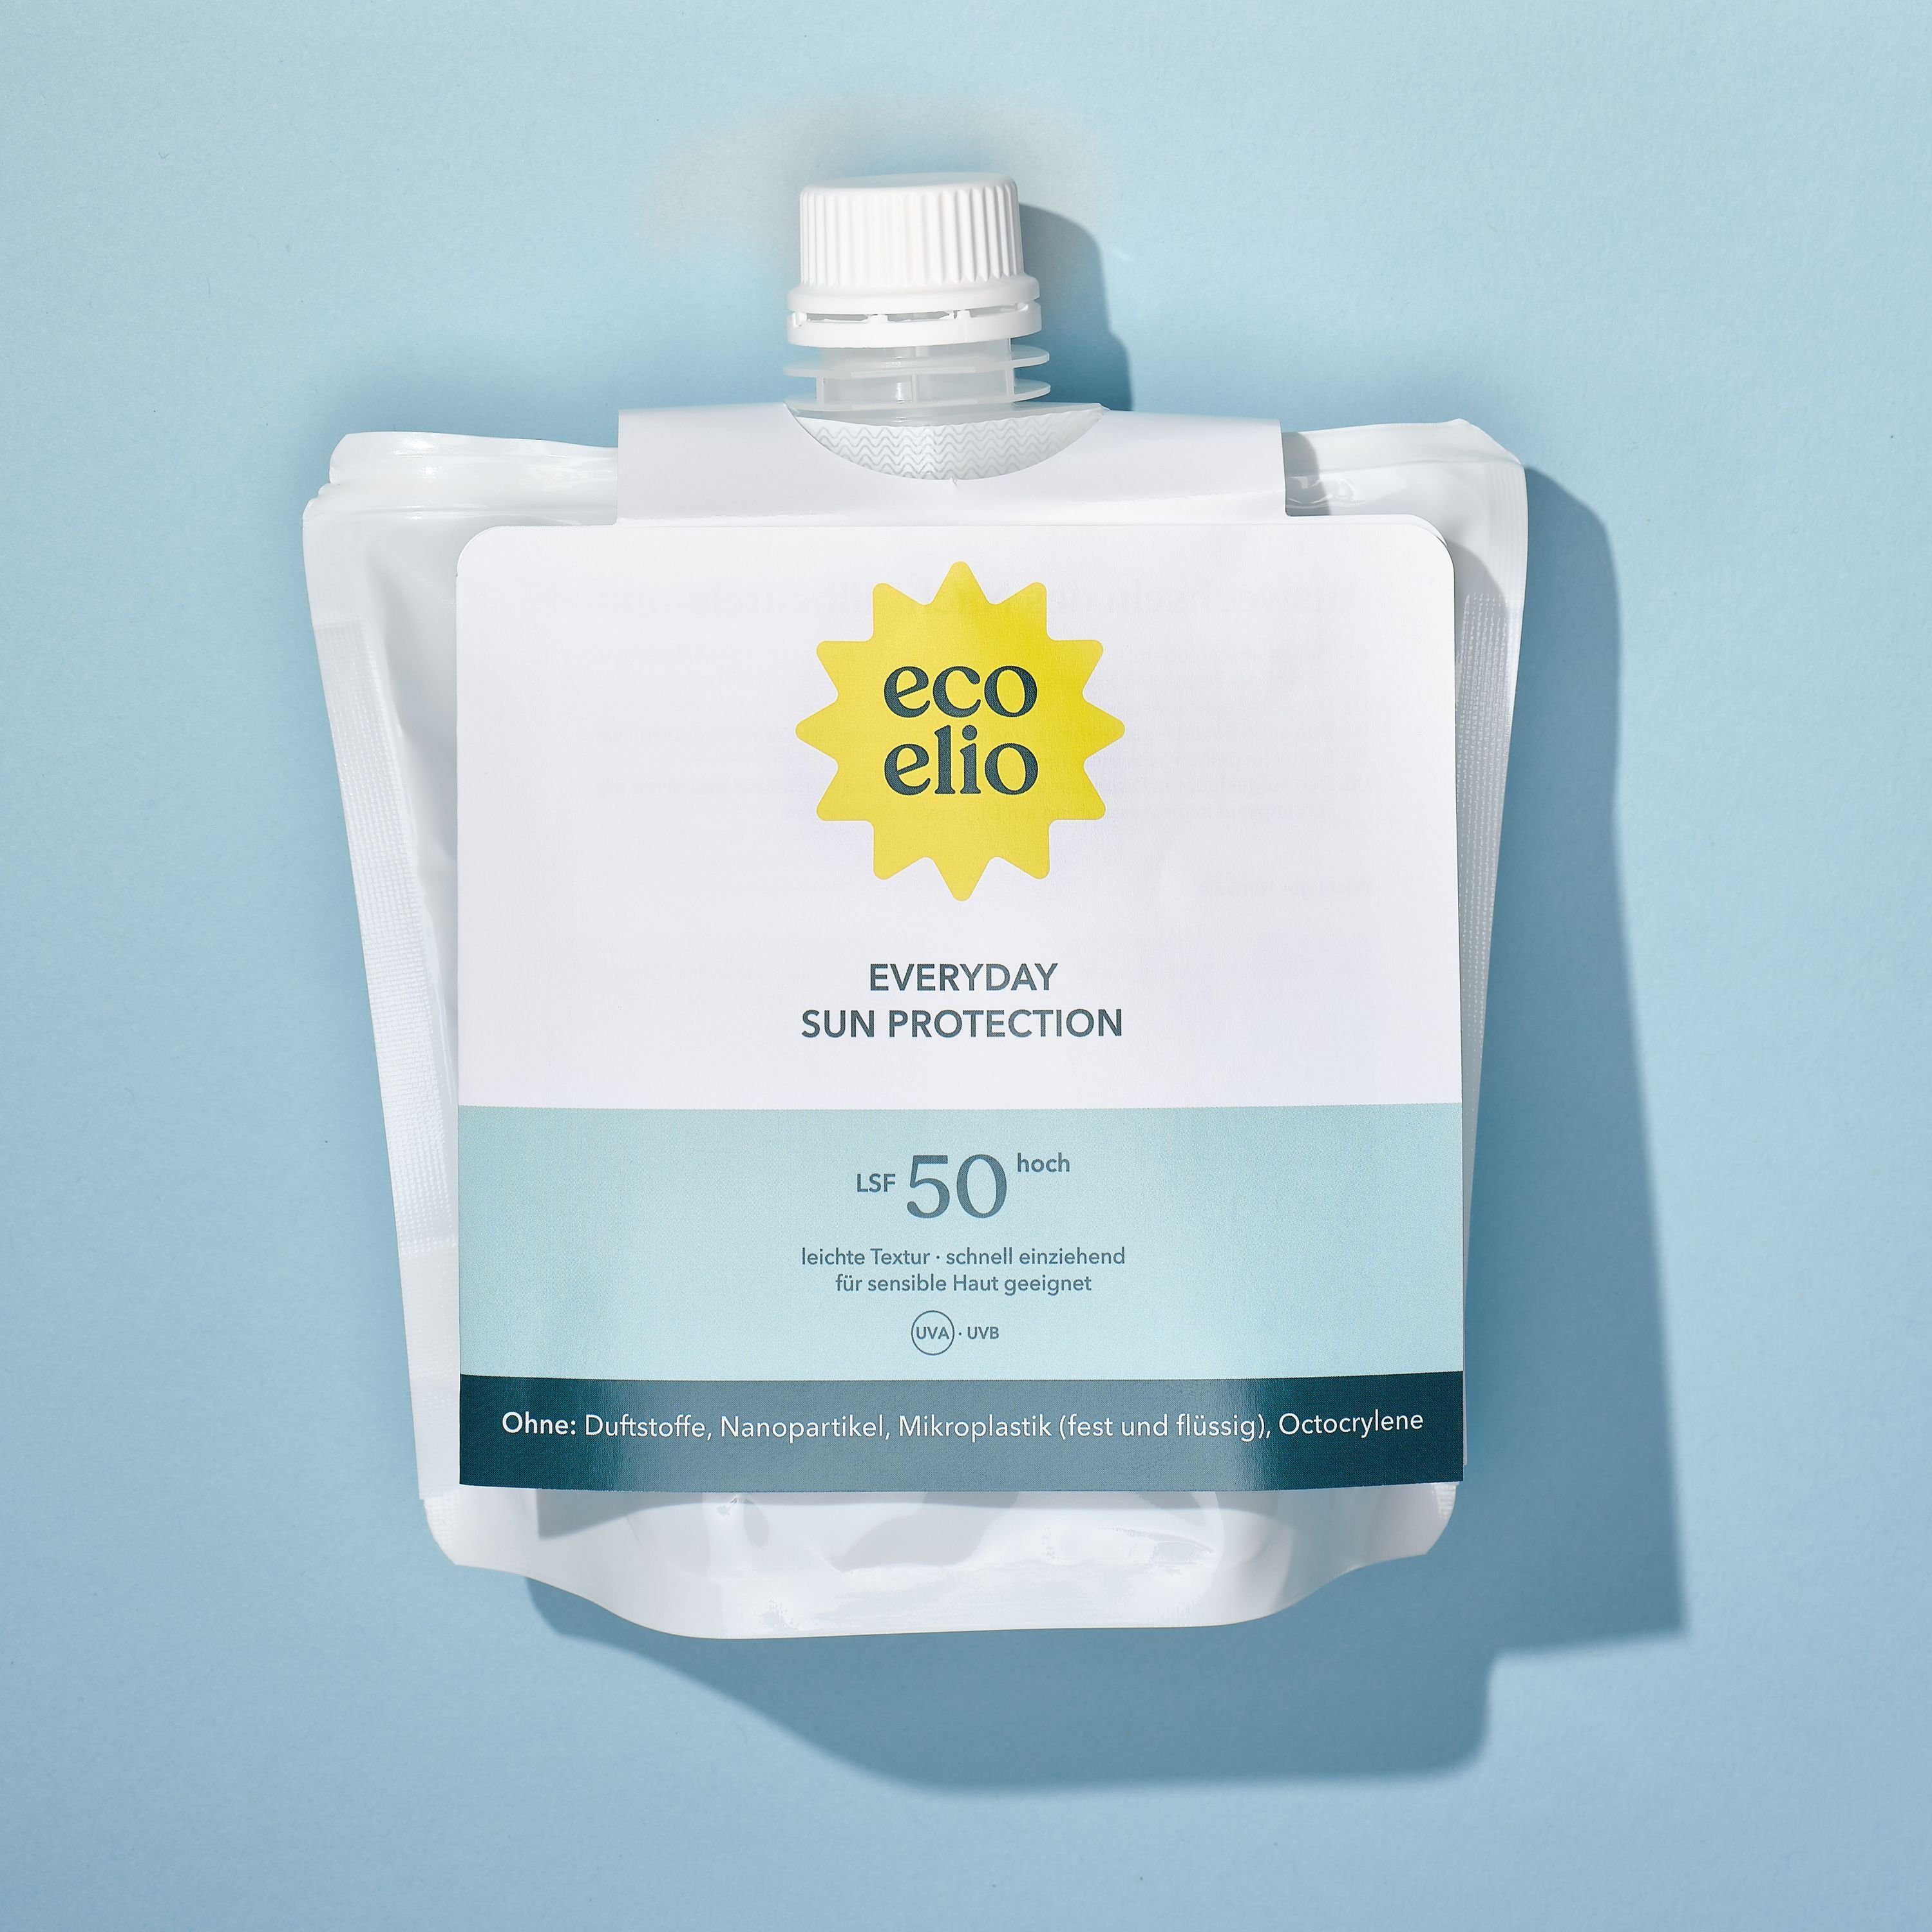 Refill, eco Sonnenschutzfluid Hautverträglich, 50 LSF Nachhaltig Nachfüllpack, einziehend schnell & elio